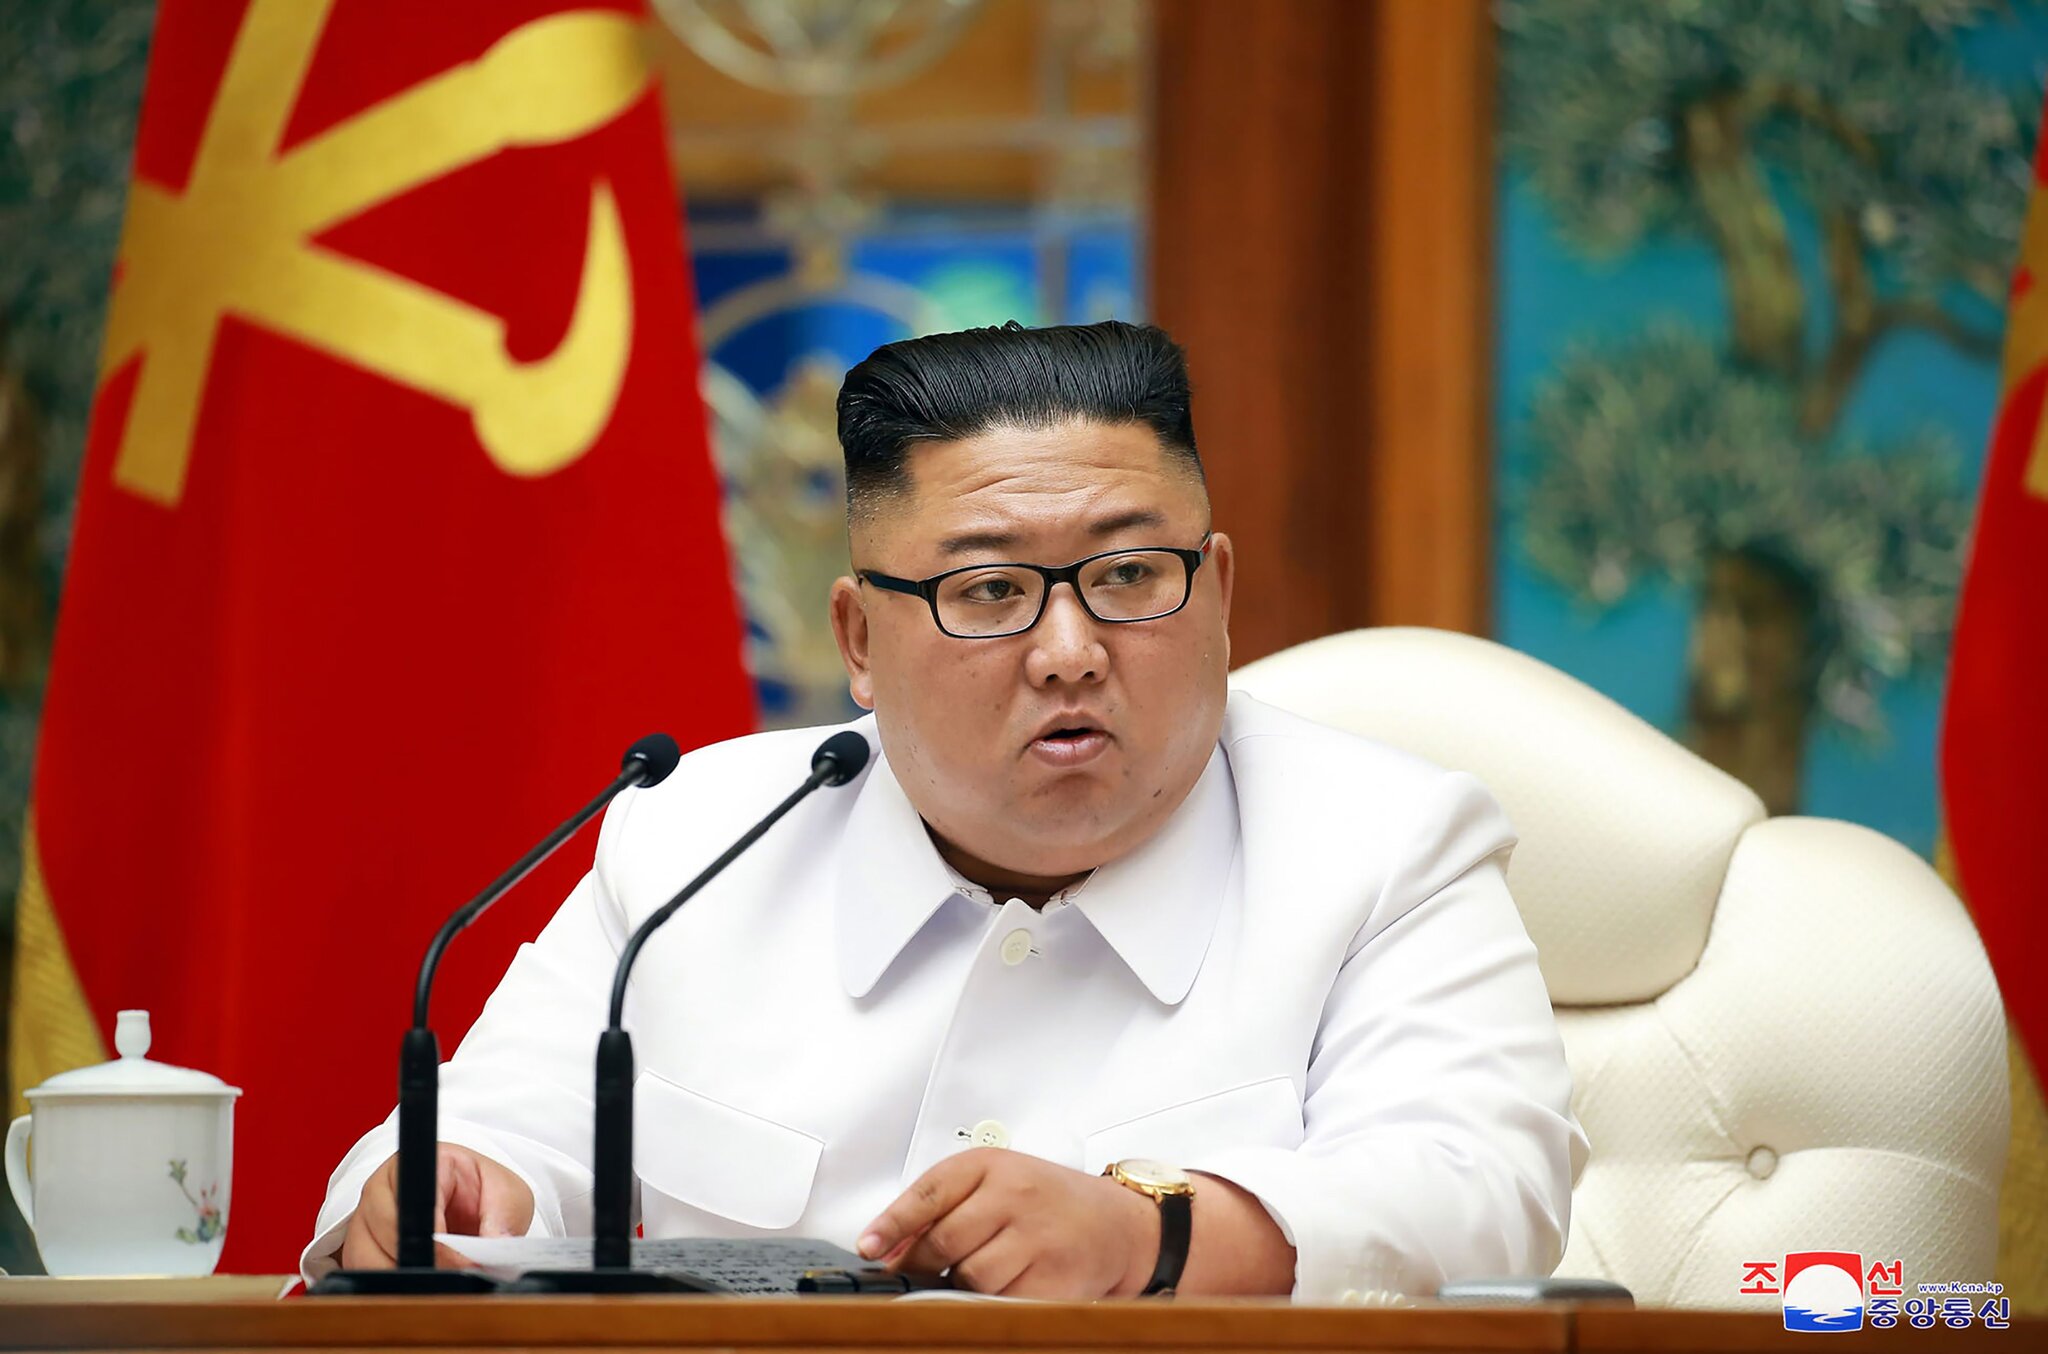 Συναγερμός στη Βόρειο Κορέα! Πρώτο πιθανό κρούσμα κορωνοϊού